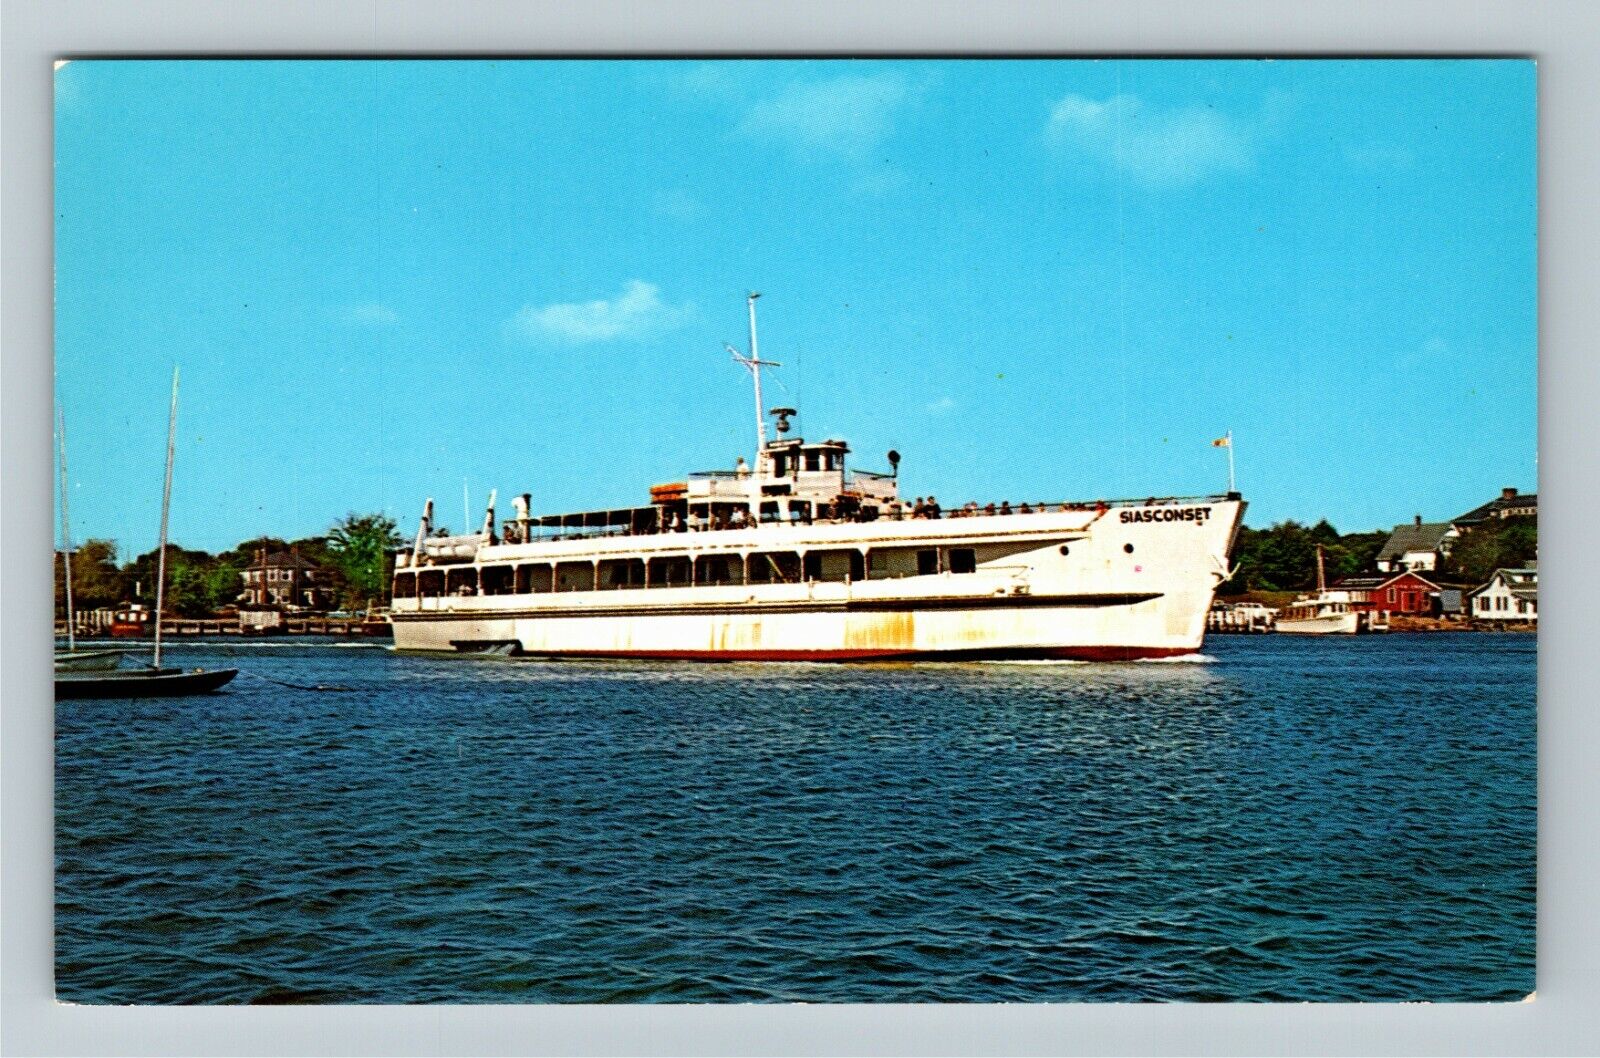 Excursion Boat Siasconset Leaving Hyannis Harbor Vintage Souvenir Postcard